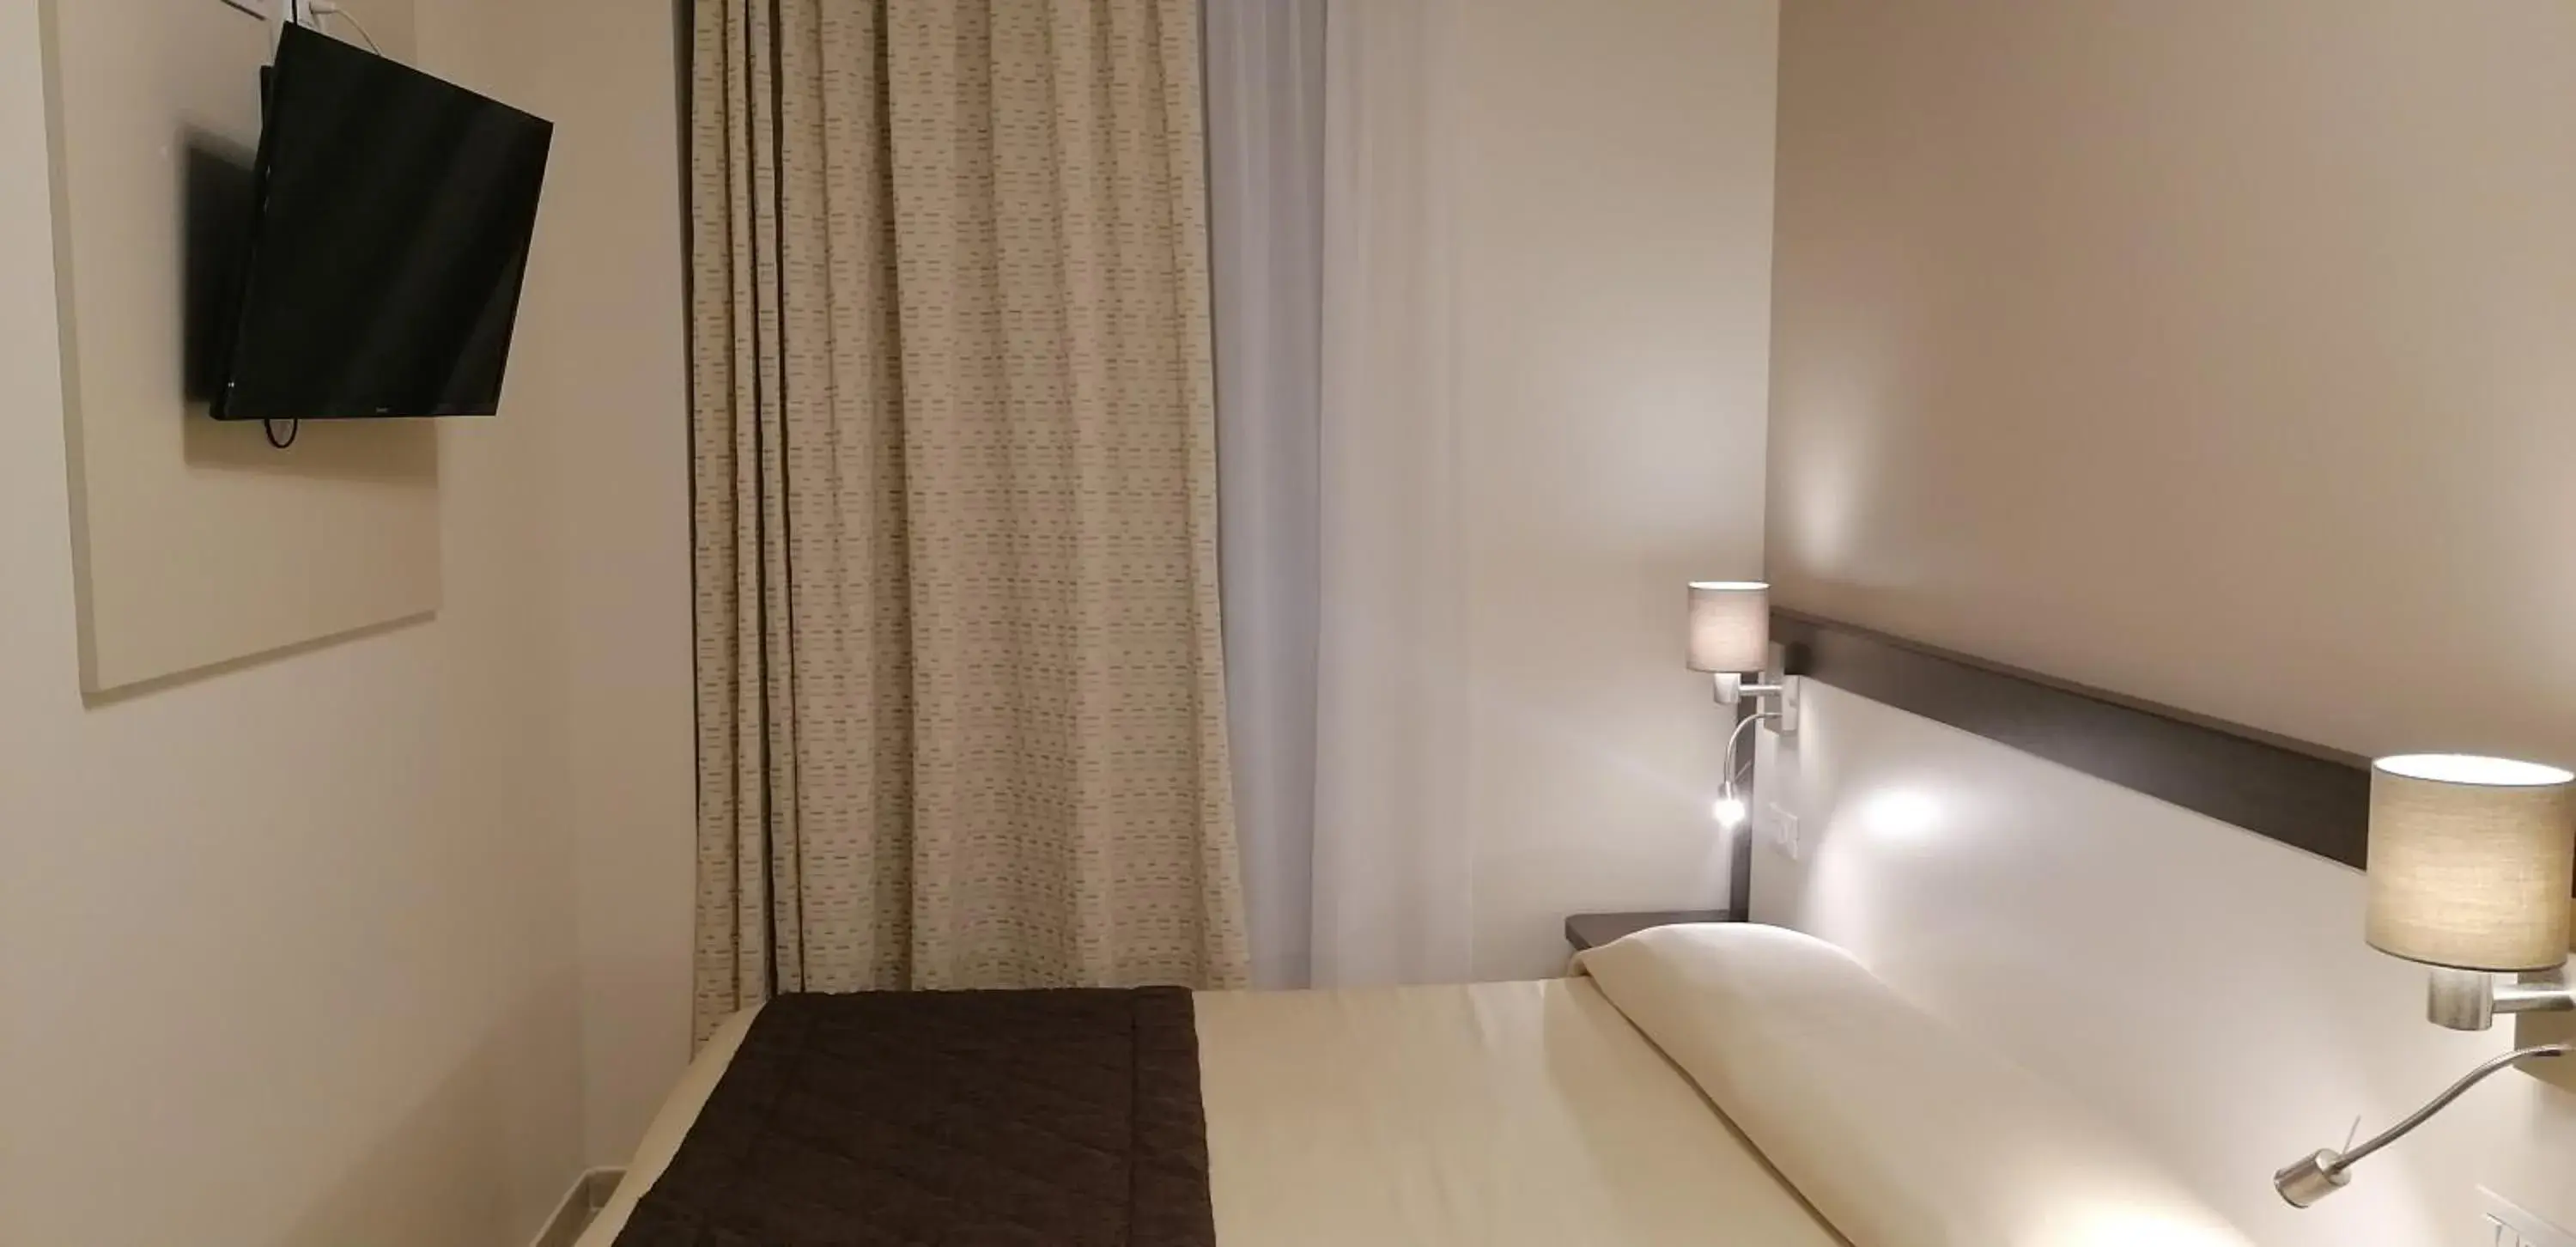 Bed in Hotel Boccascena